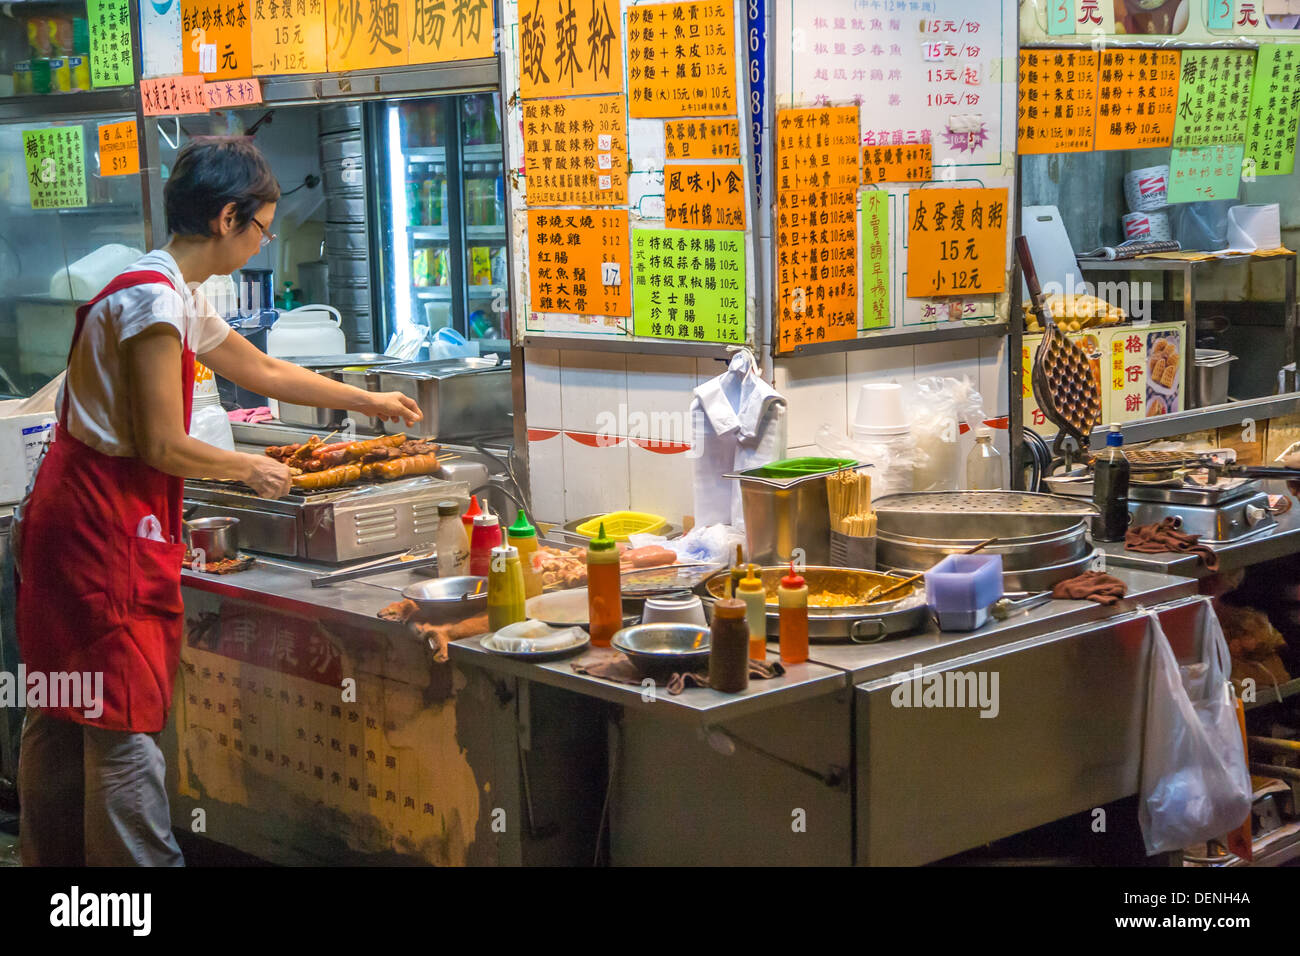 Puesto de comida de la calle, Hong Kong Foto de stock